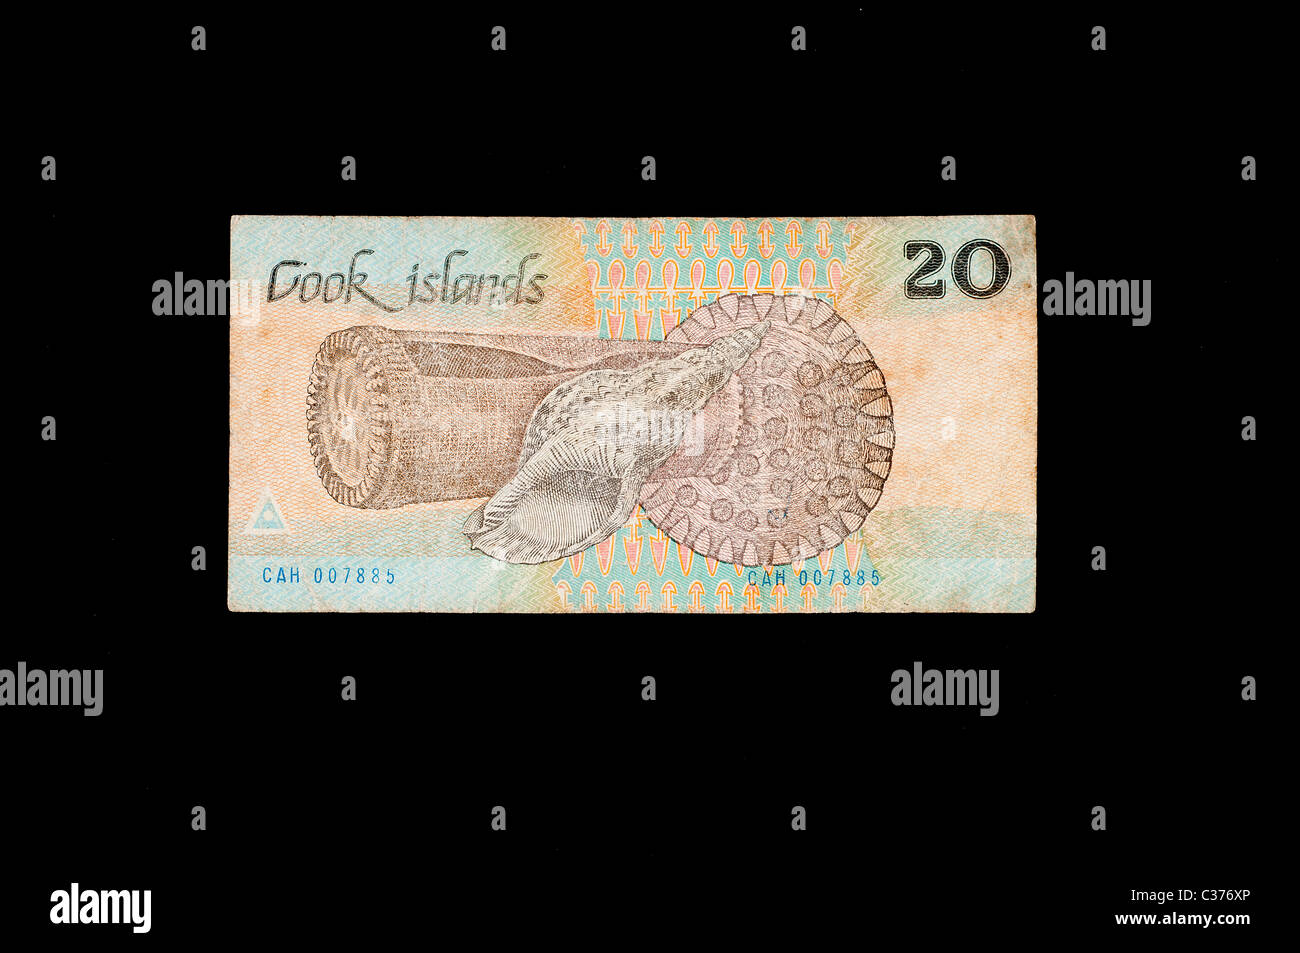 Billet de 20 dollars des îles Cook Banque D'Images